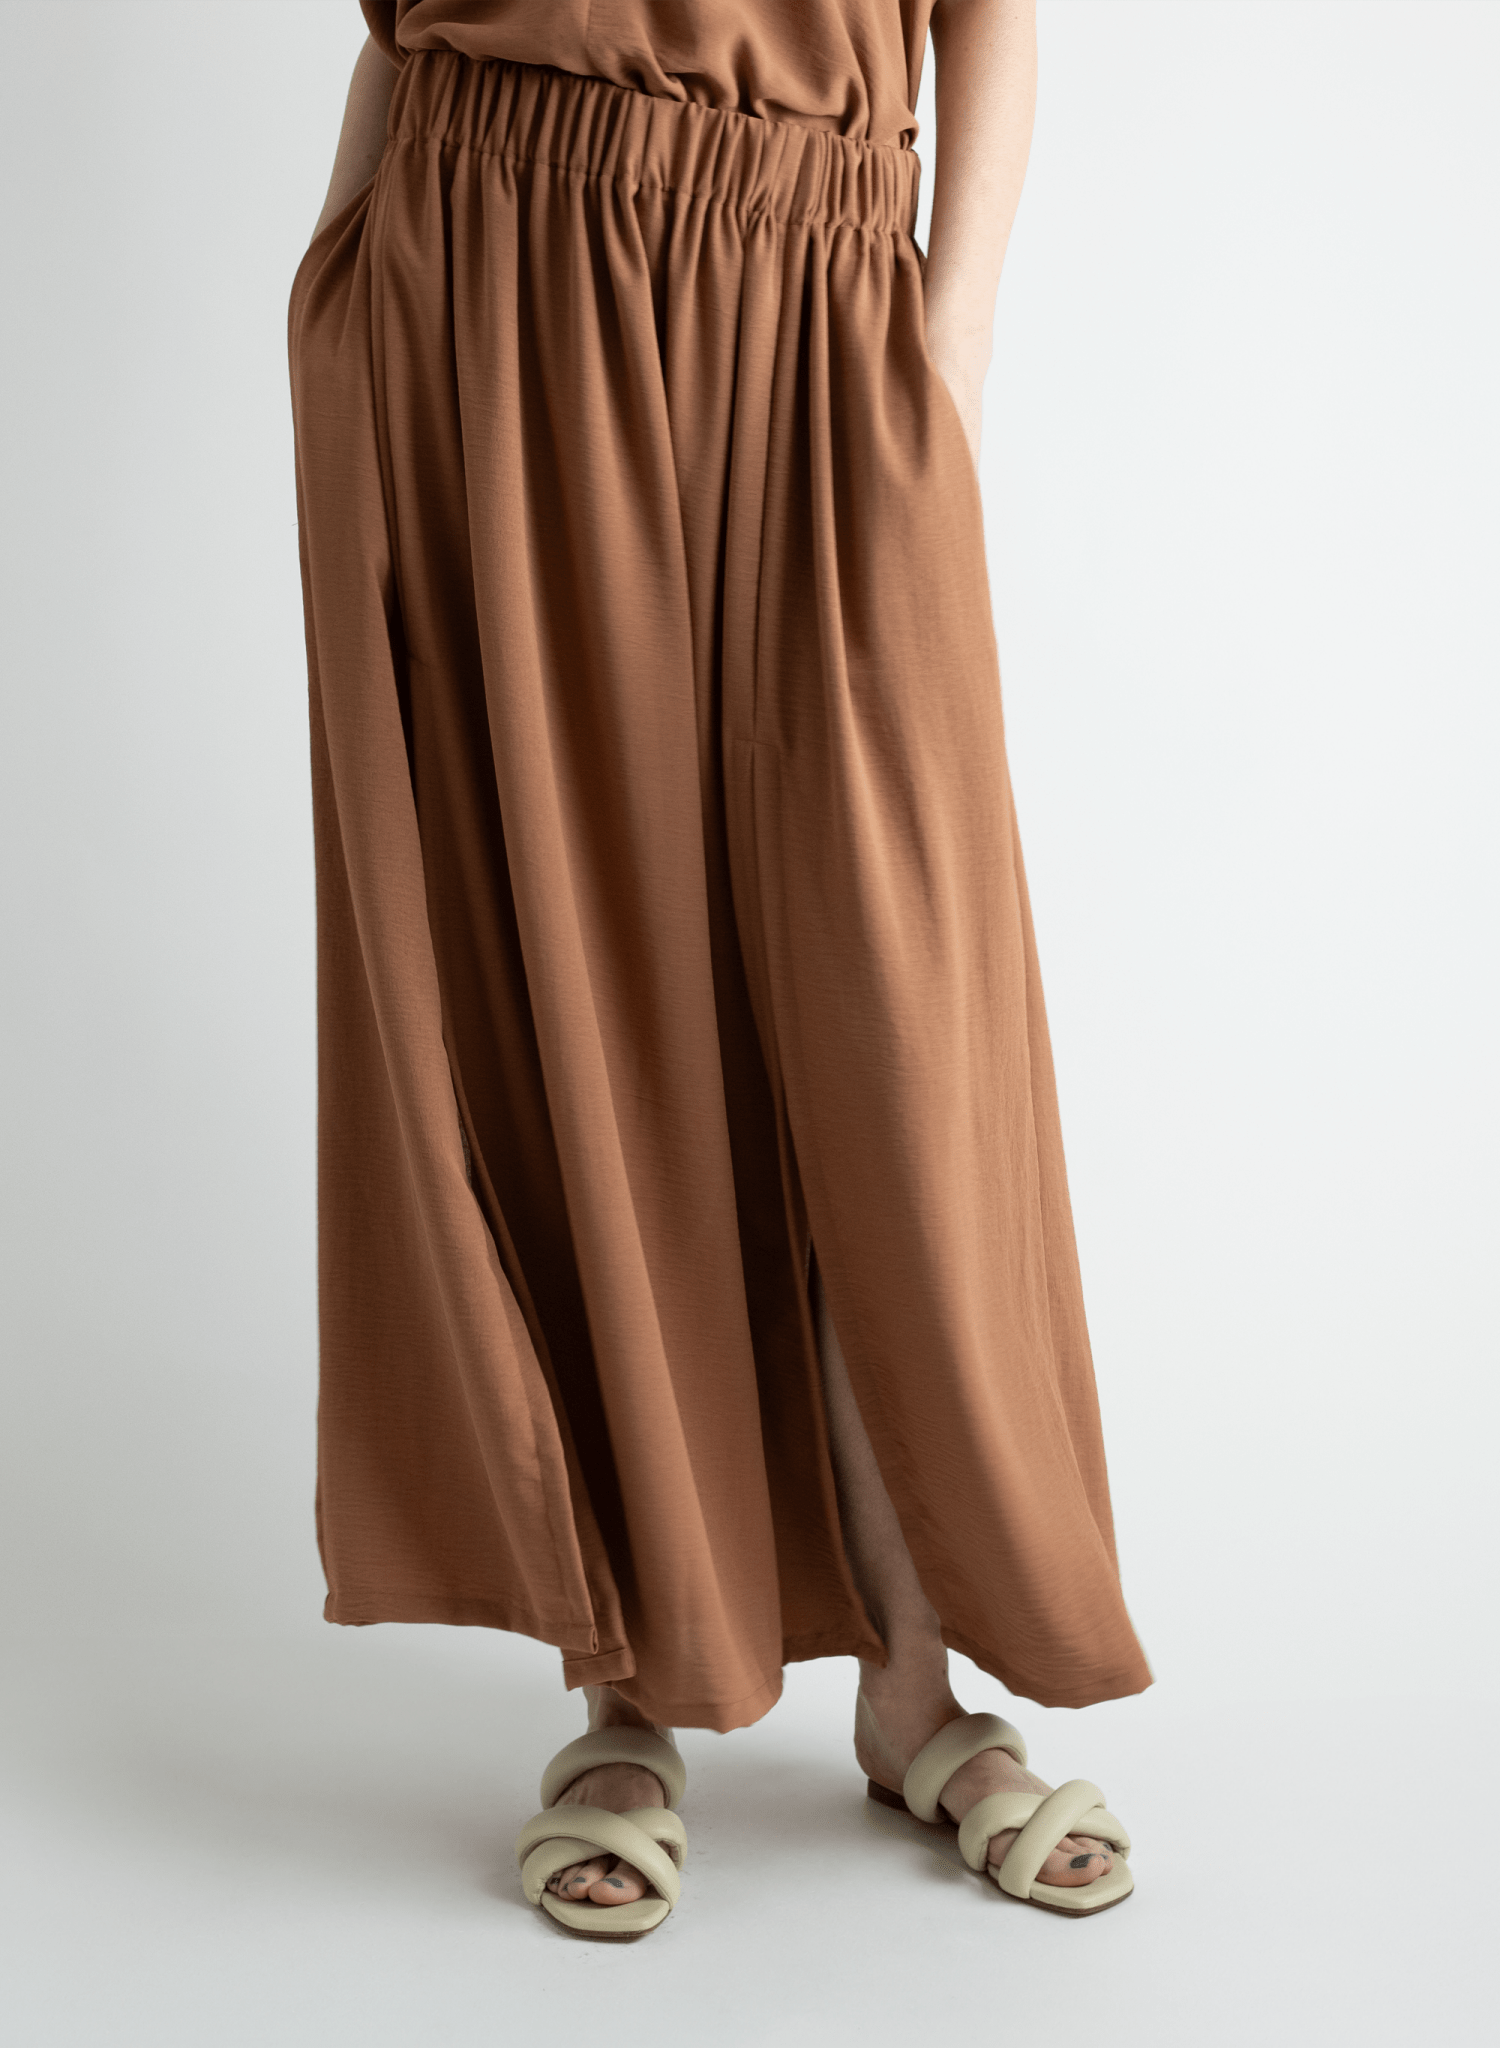 Abstraction Skirt - Latte - Meg